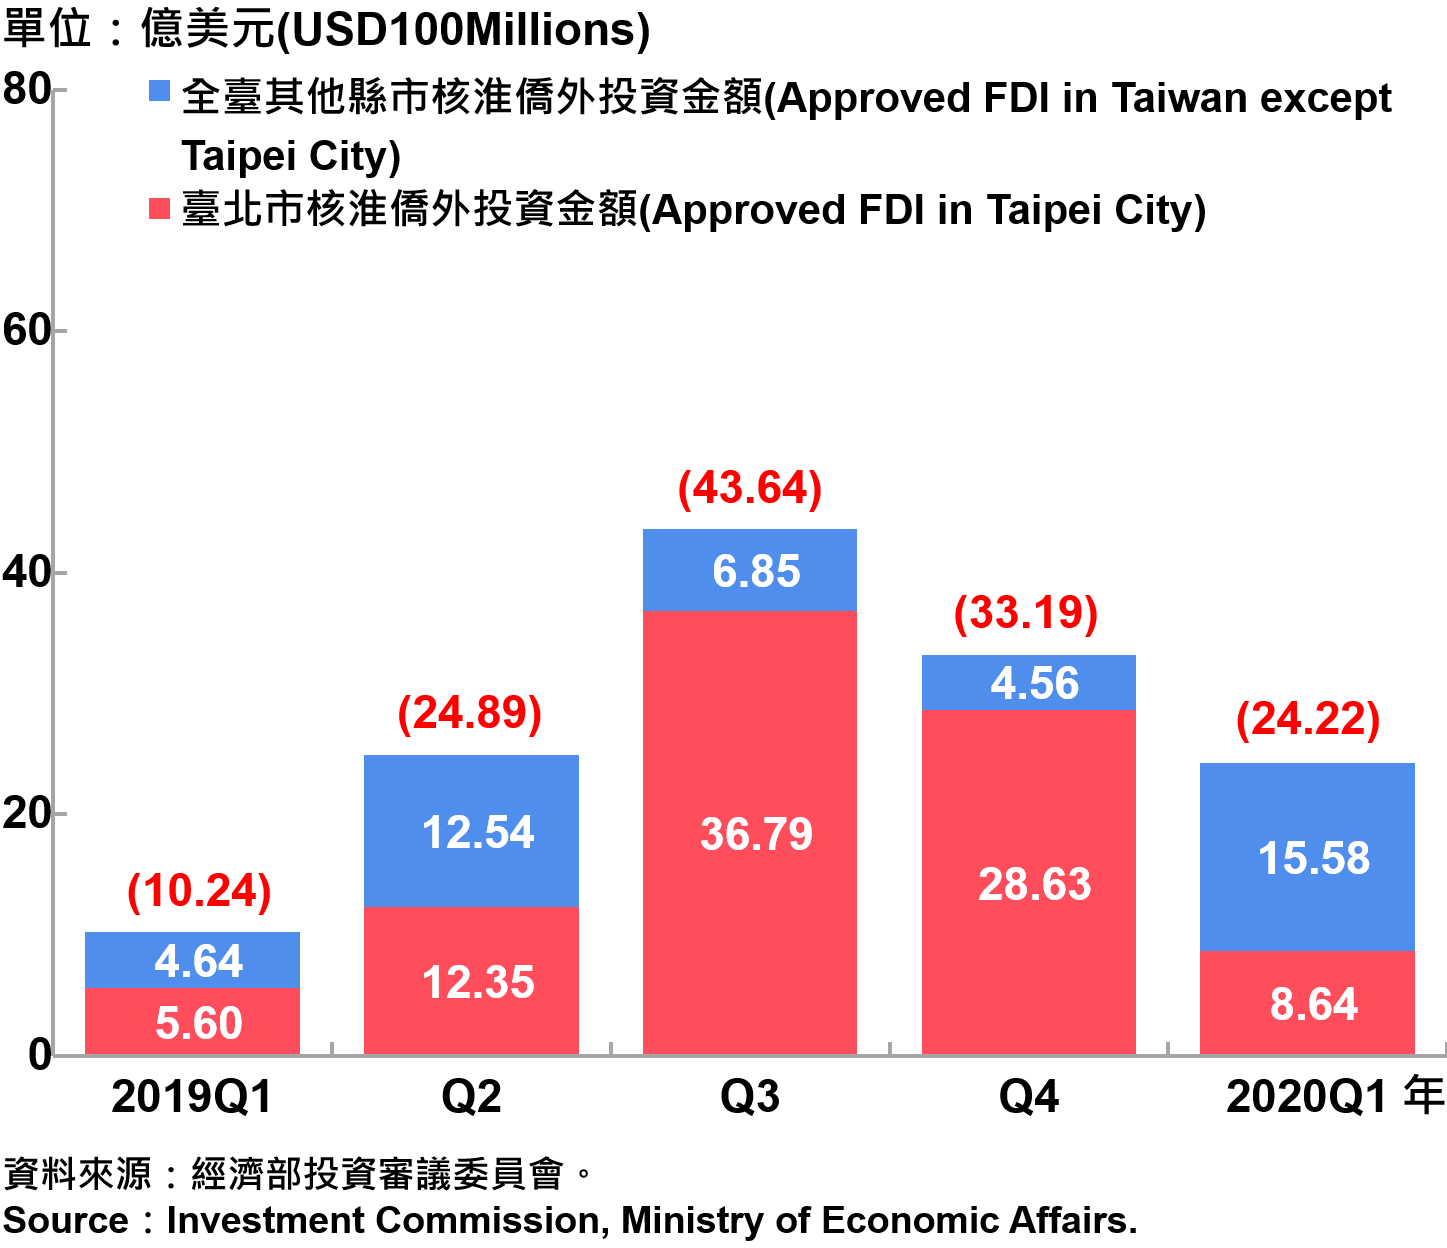 臺北市與全國僑外投資金額—2020Q1 Foreign Direct Investment（FDI）in Taipei City and Taiwan—2020Q1